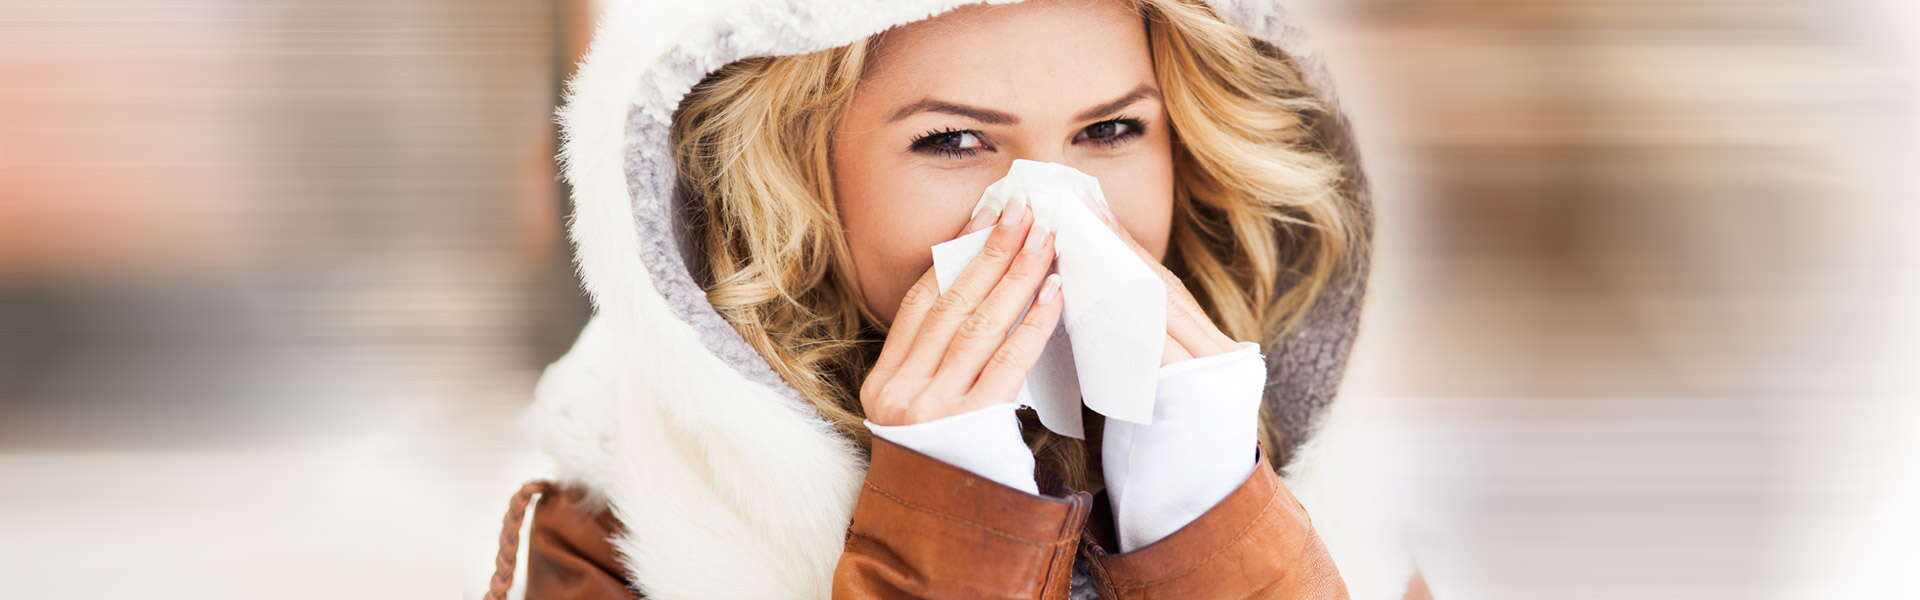 Cómo curar un resfriado: síntomas, causas y remedios